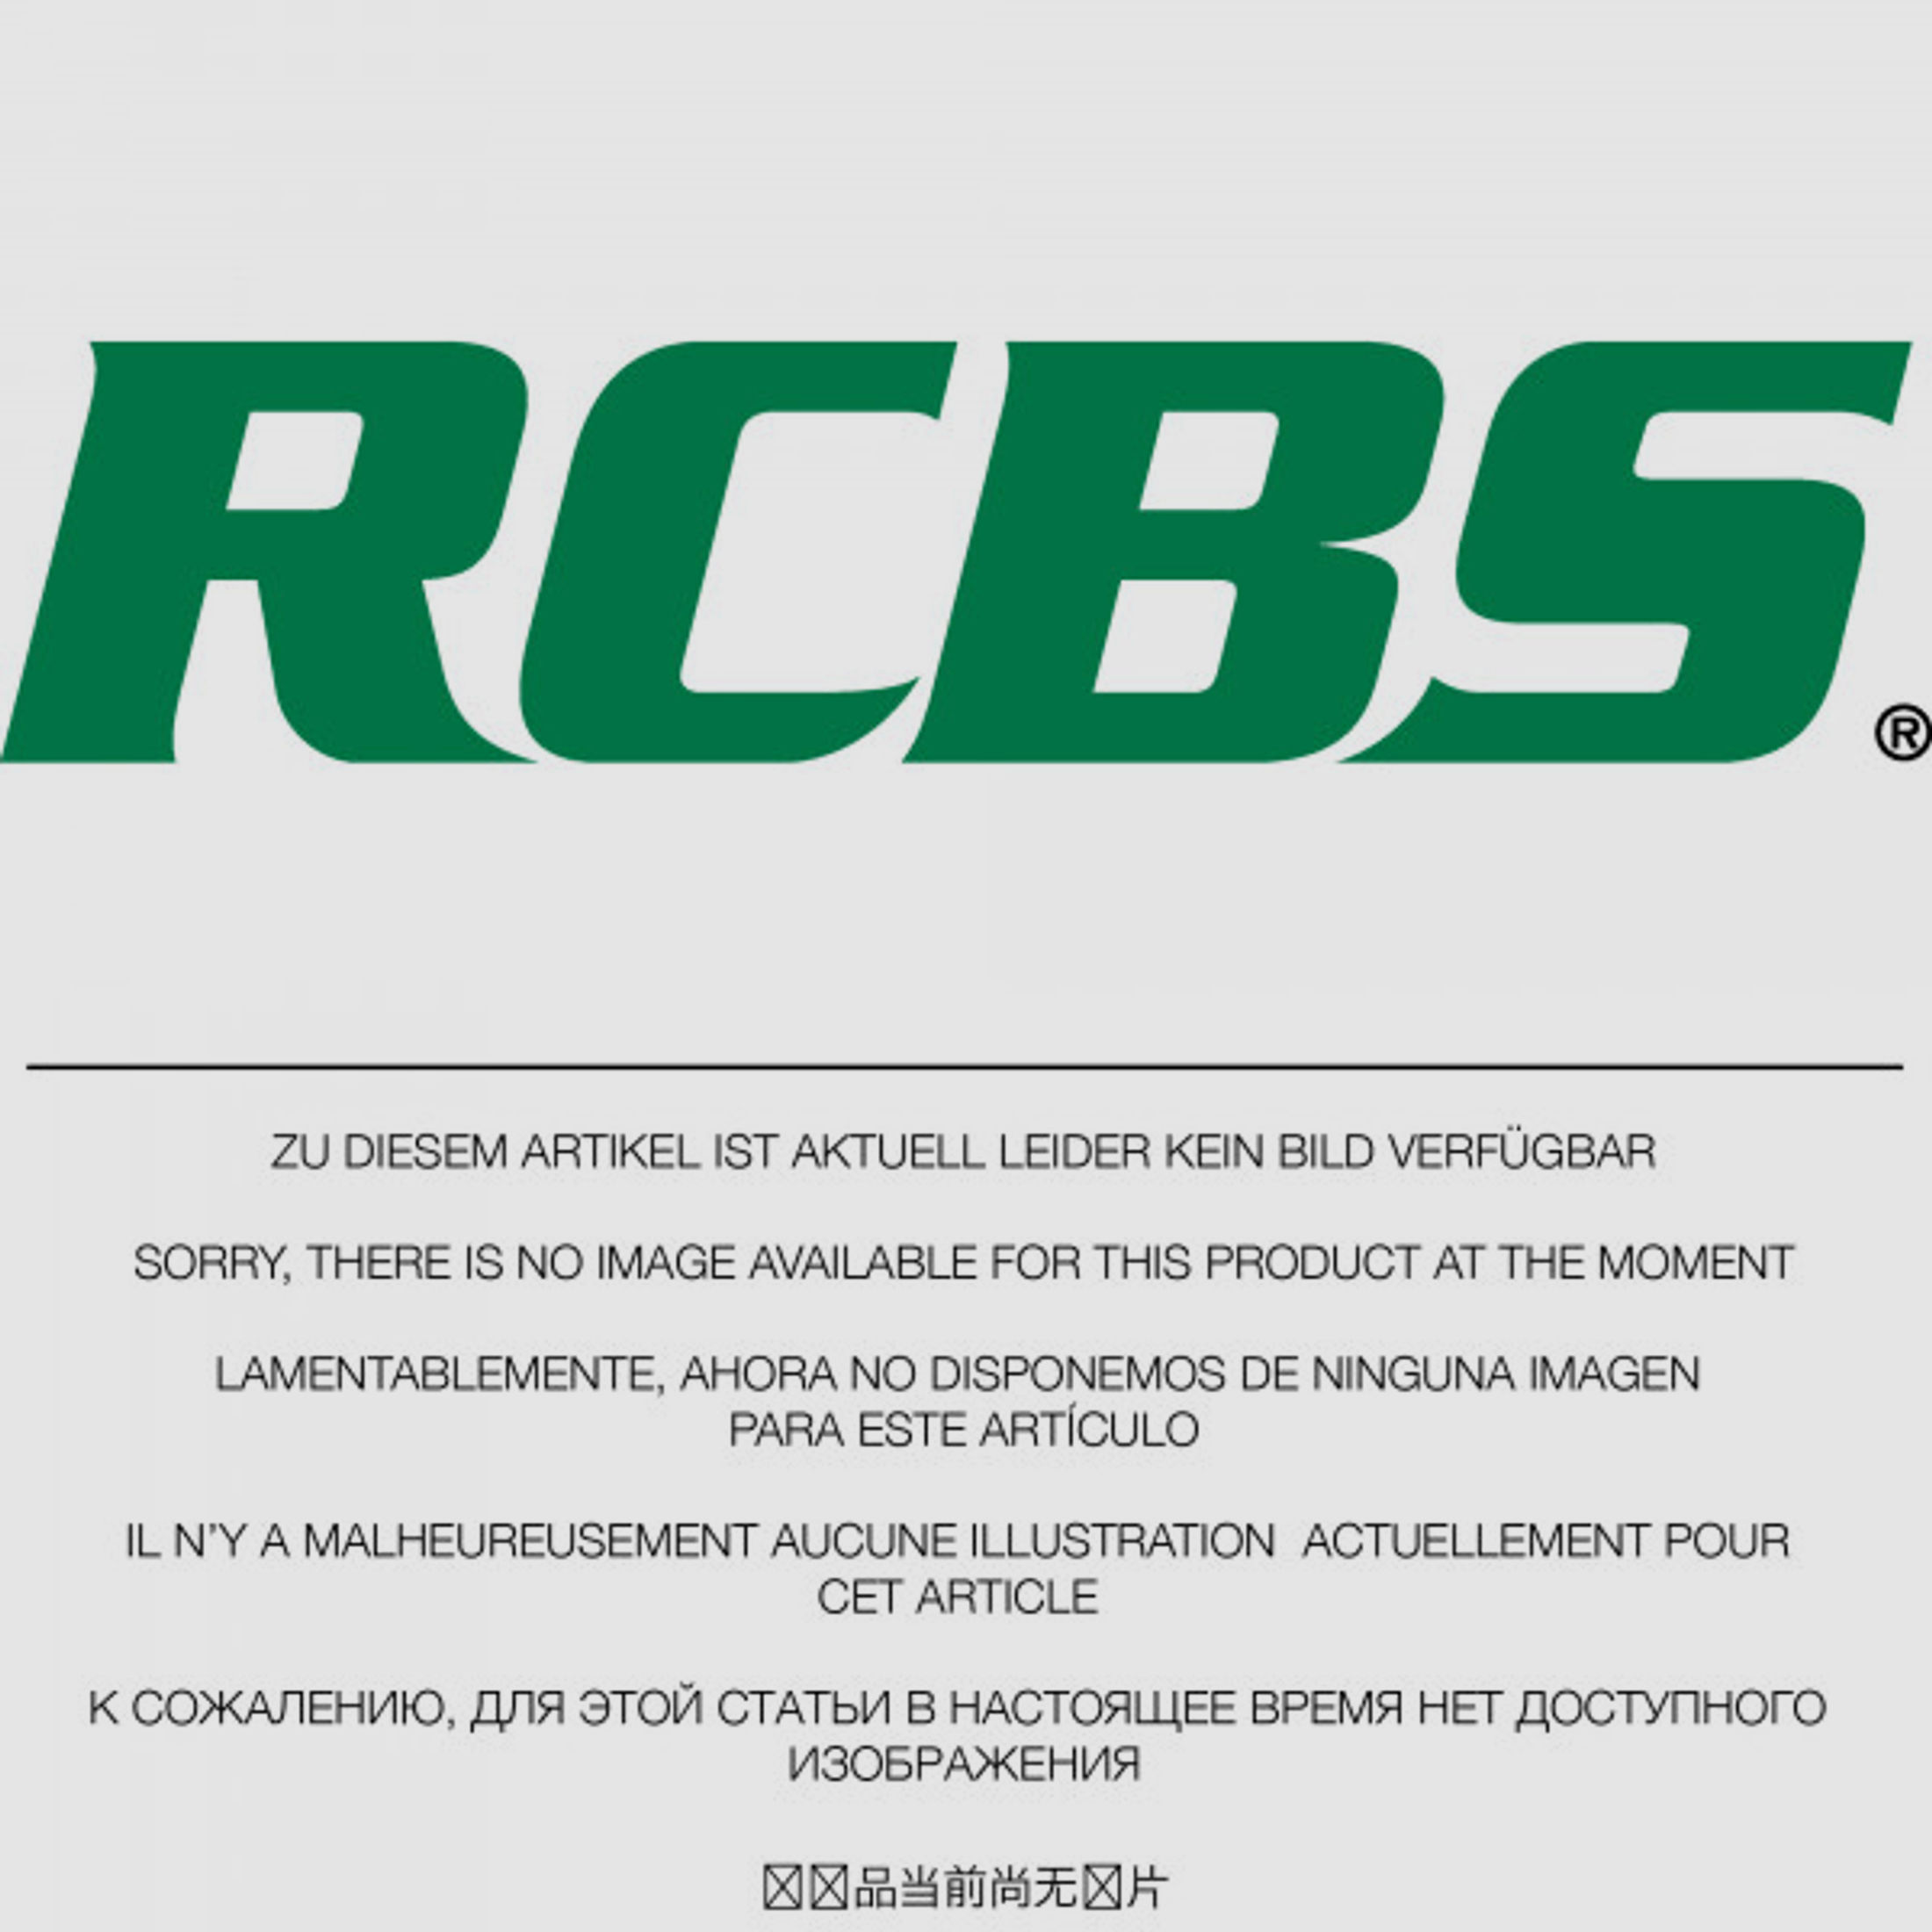 RCBS Lube-A-Matic Top Punch Geschoss Setzstempel Nr. 637 #85637